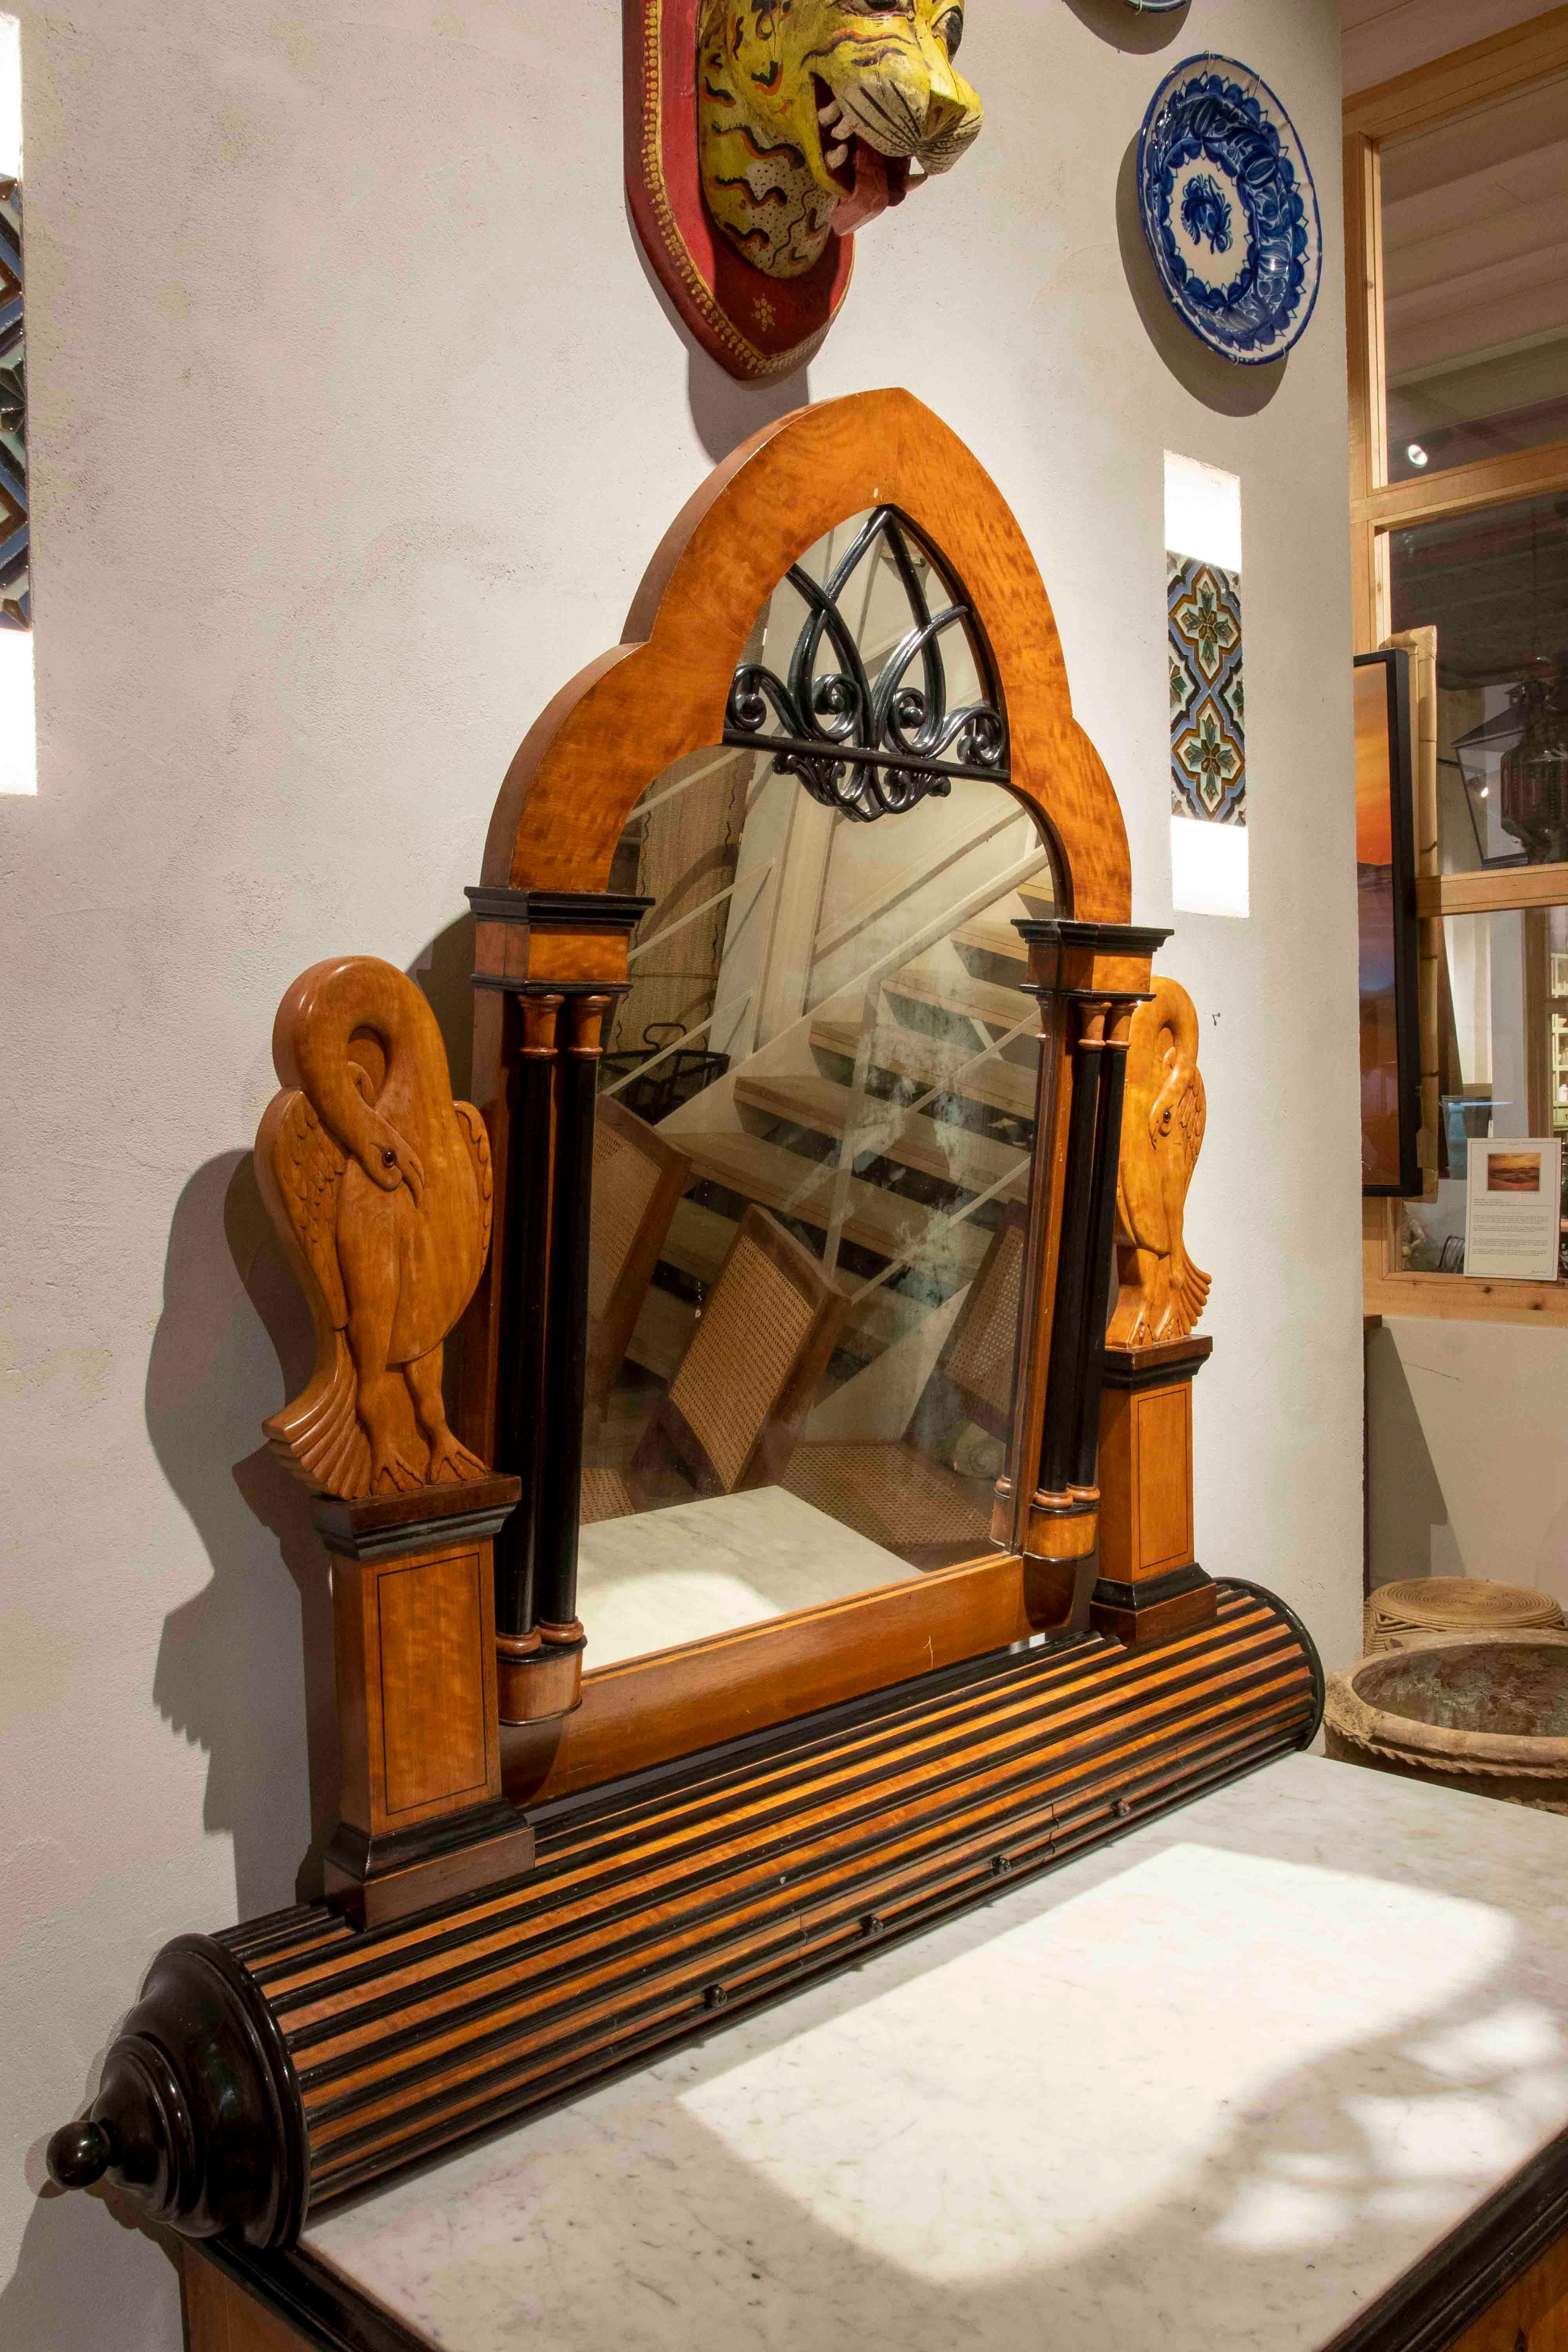 Mueble tocador de caoba del S XIX con decoracion de cisnes y espejo.
Procedencia de la casa de Marbella de la la familia Thierry Russell y Critina Onassis